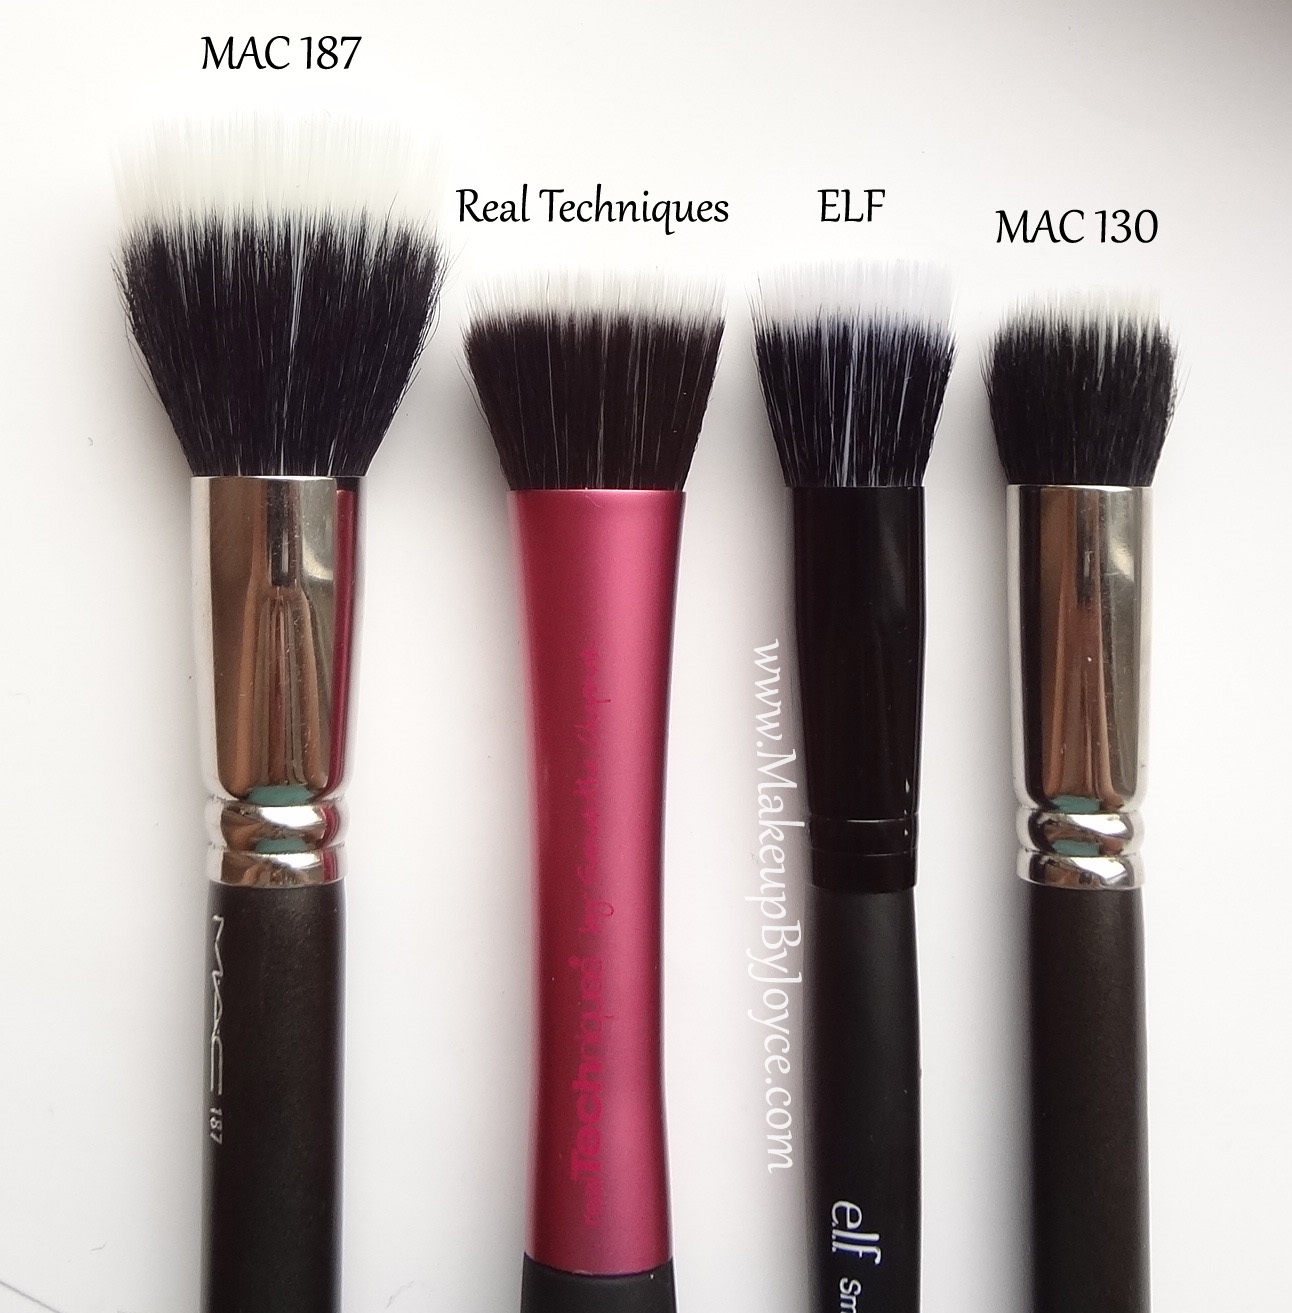 e.l.f. Cosmetics Studio Small Stipple Brush - Reviews